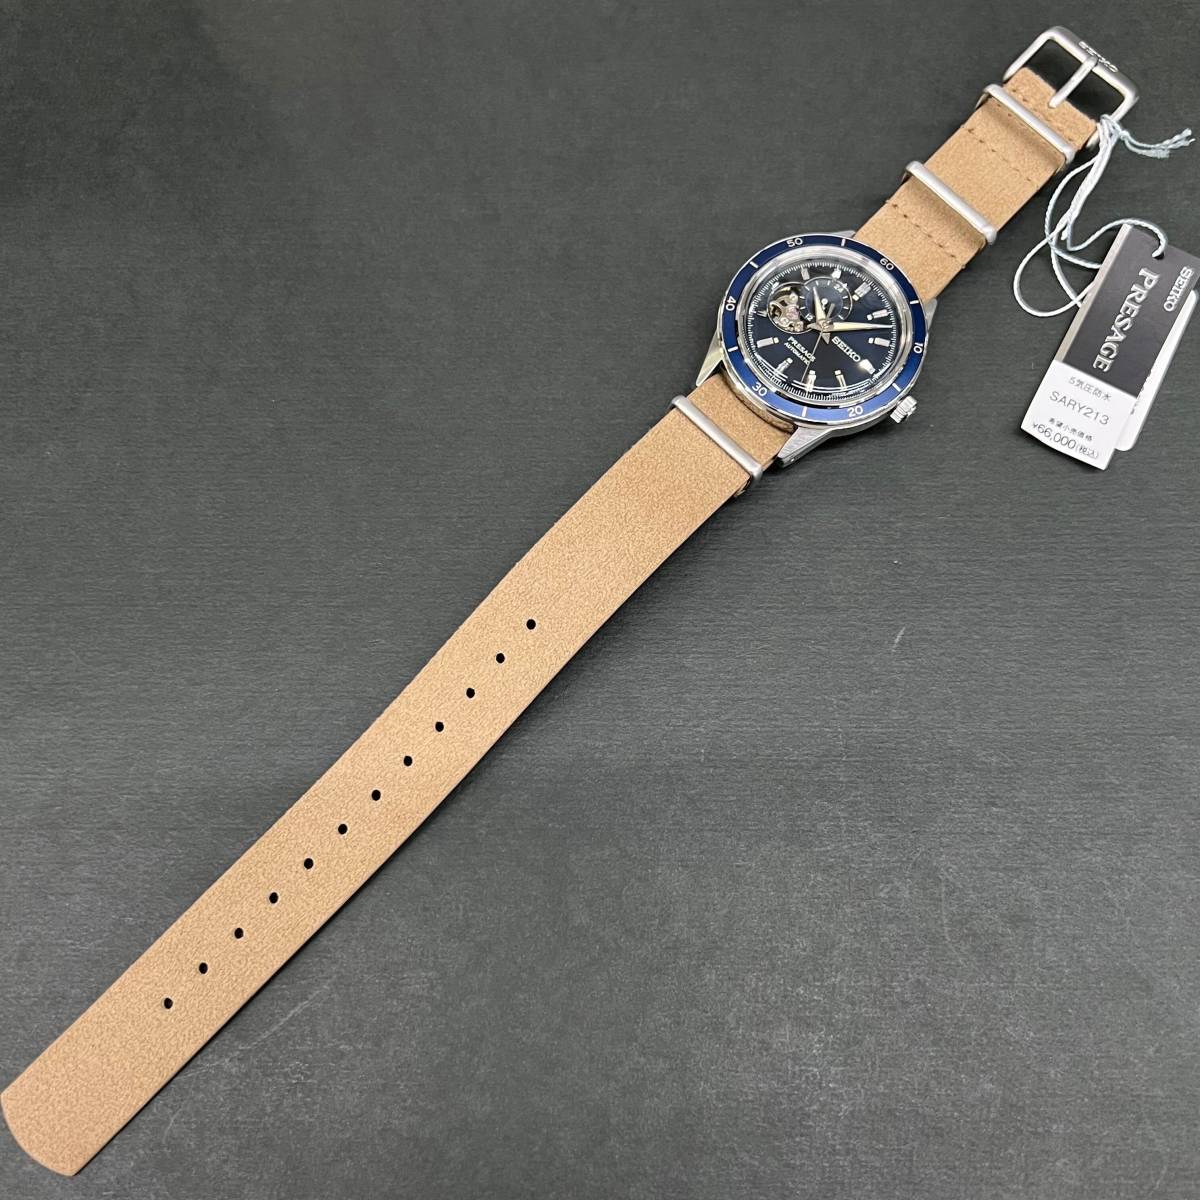 セール! 完全新品 セイコー正規保証付き☆SEIKO NATOベルト 機械式時計